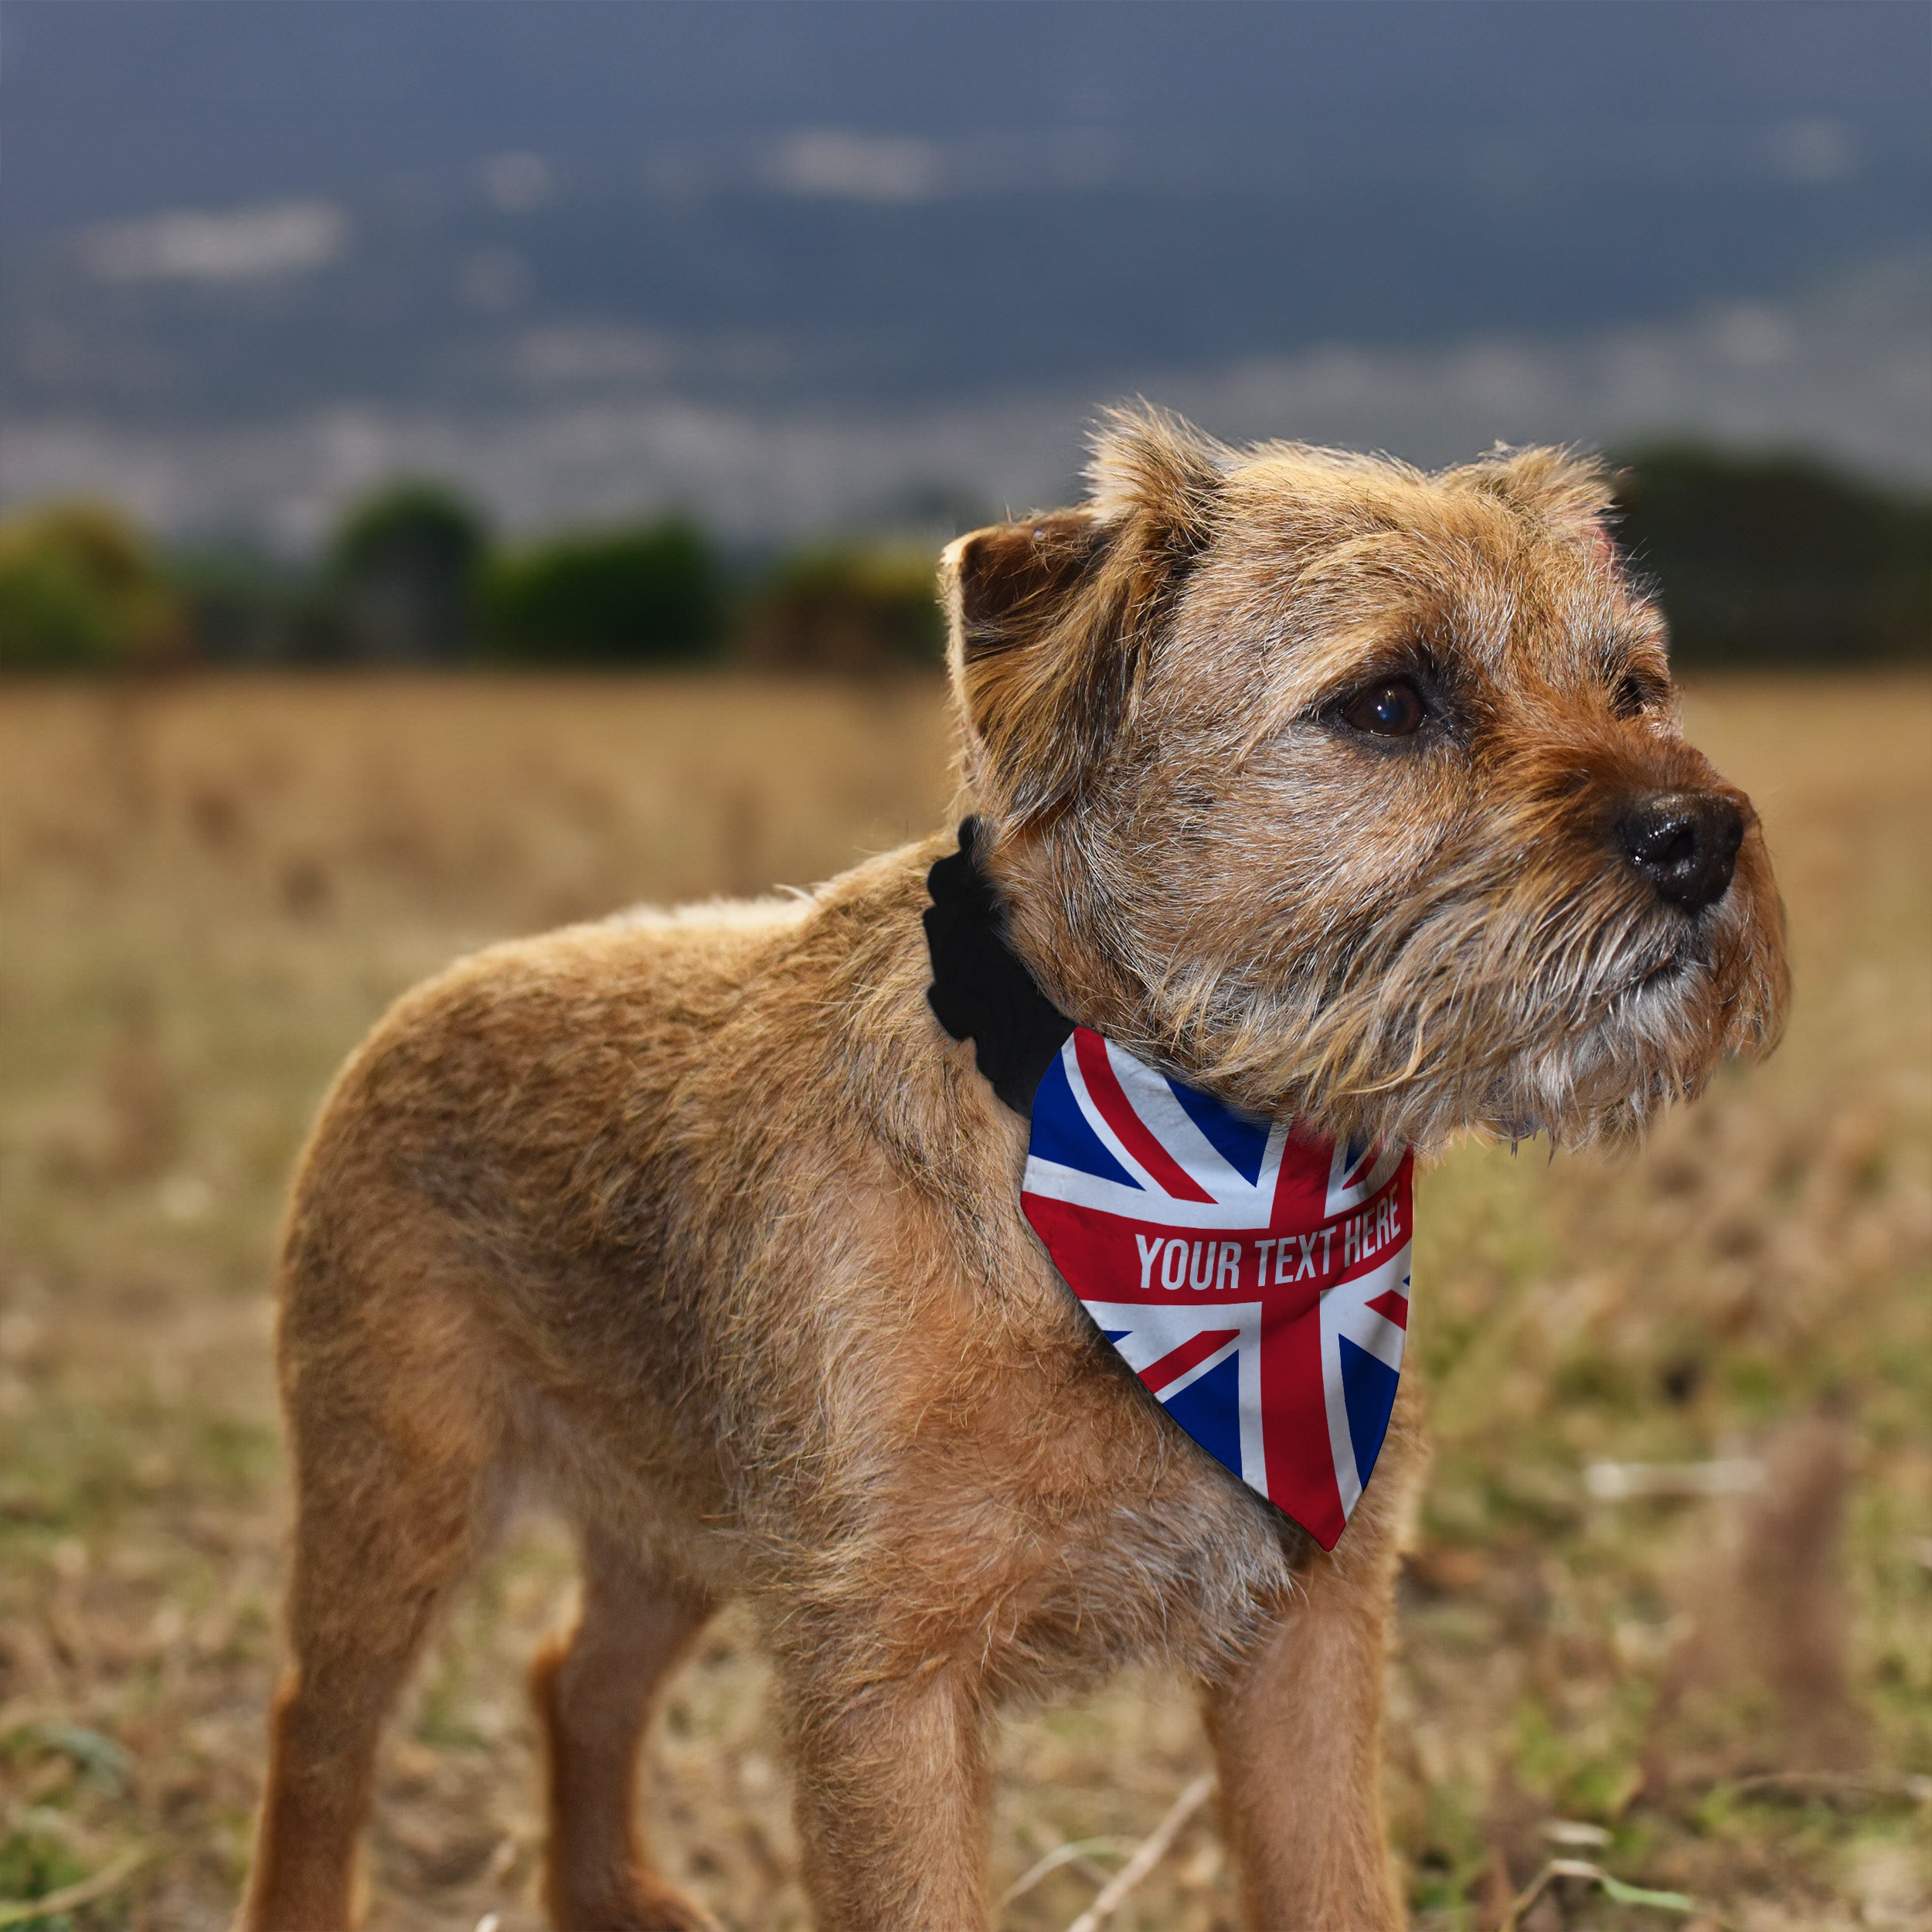 Union Jack Flag - Custom Personalised Dog Bandana - 4 Sizes